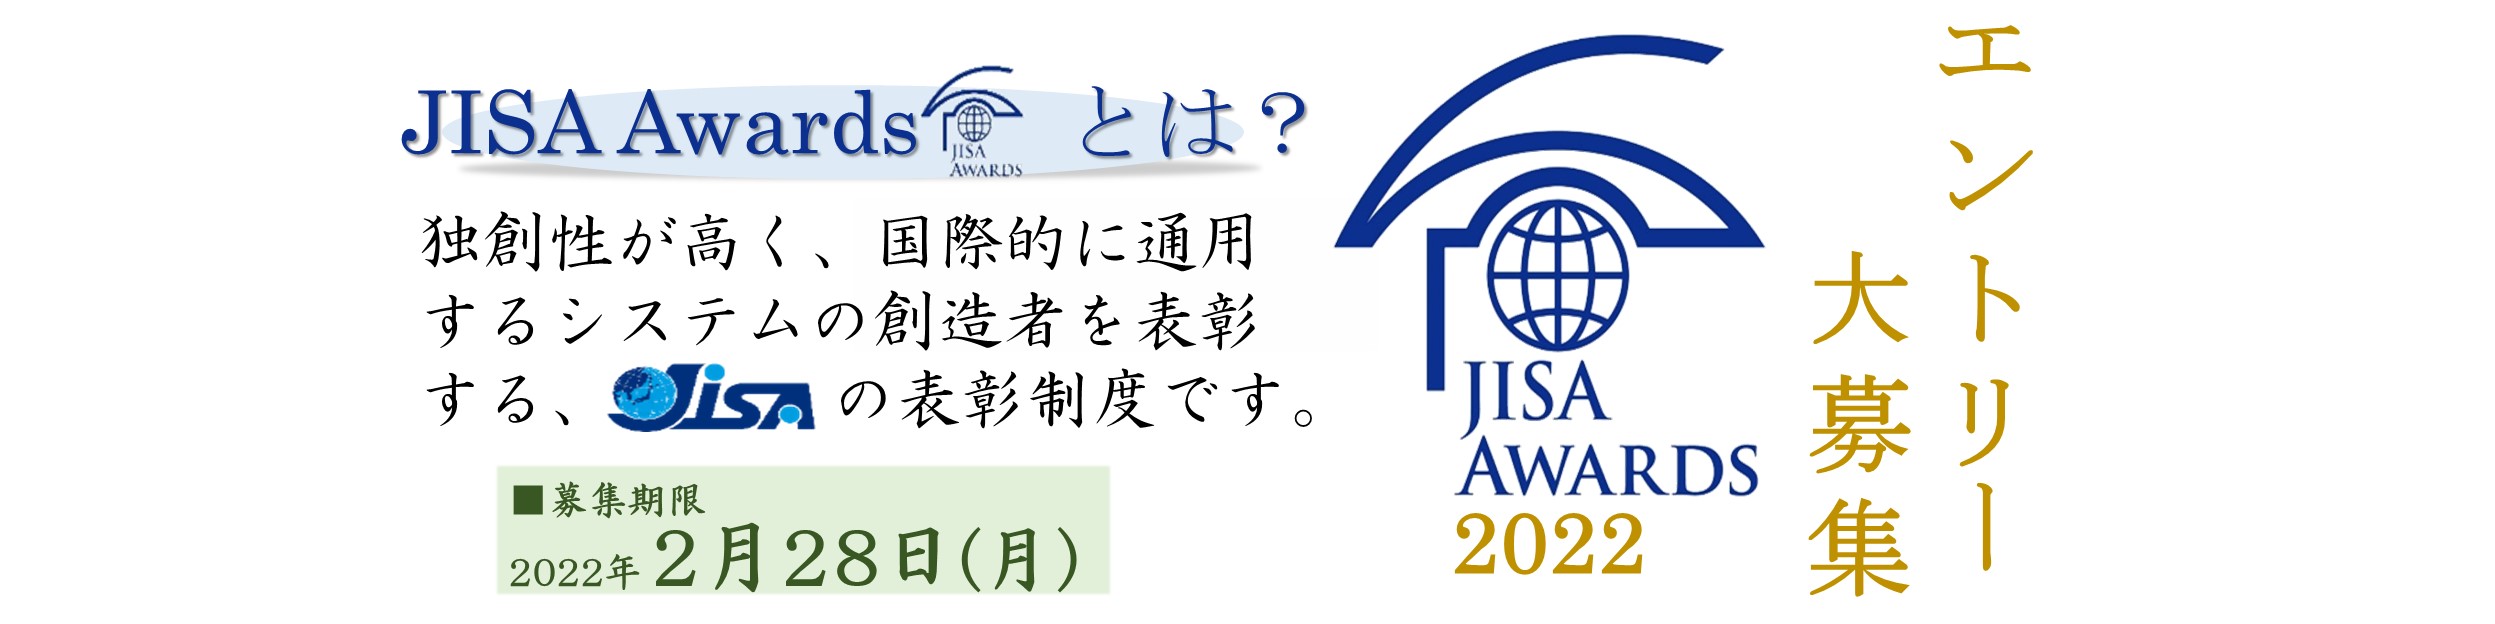 JISA Awards